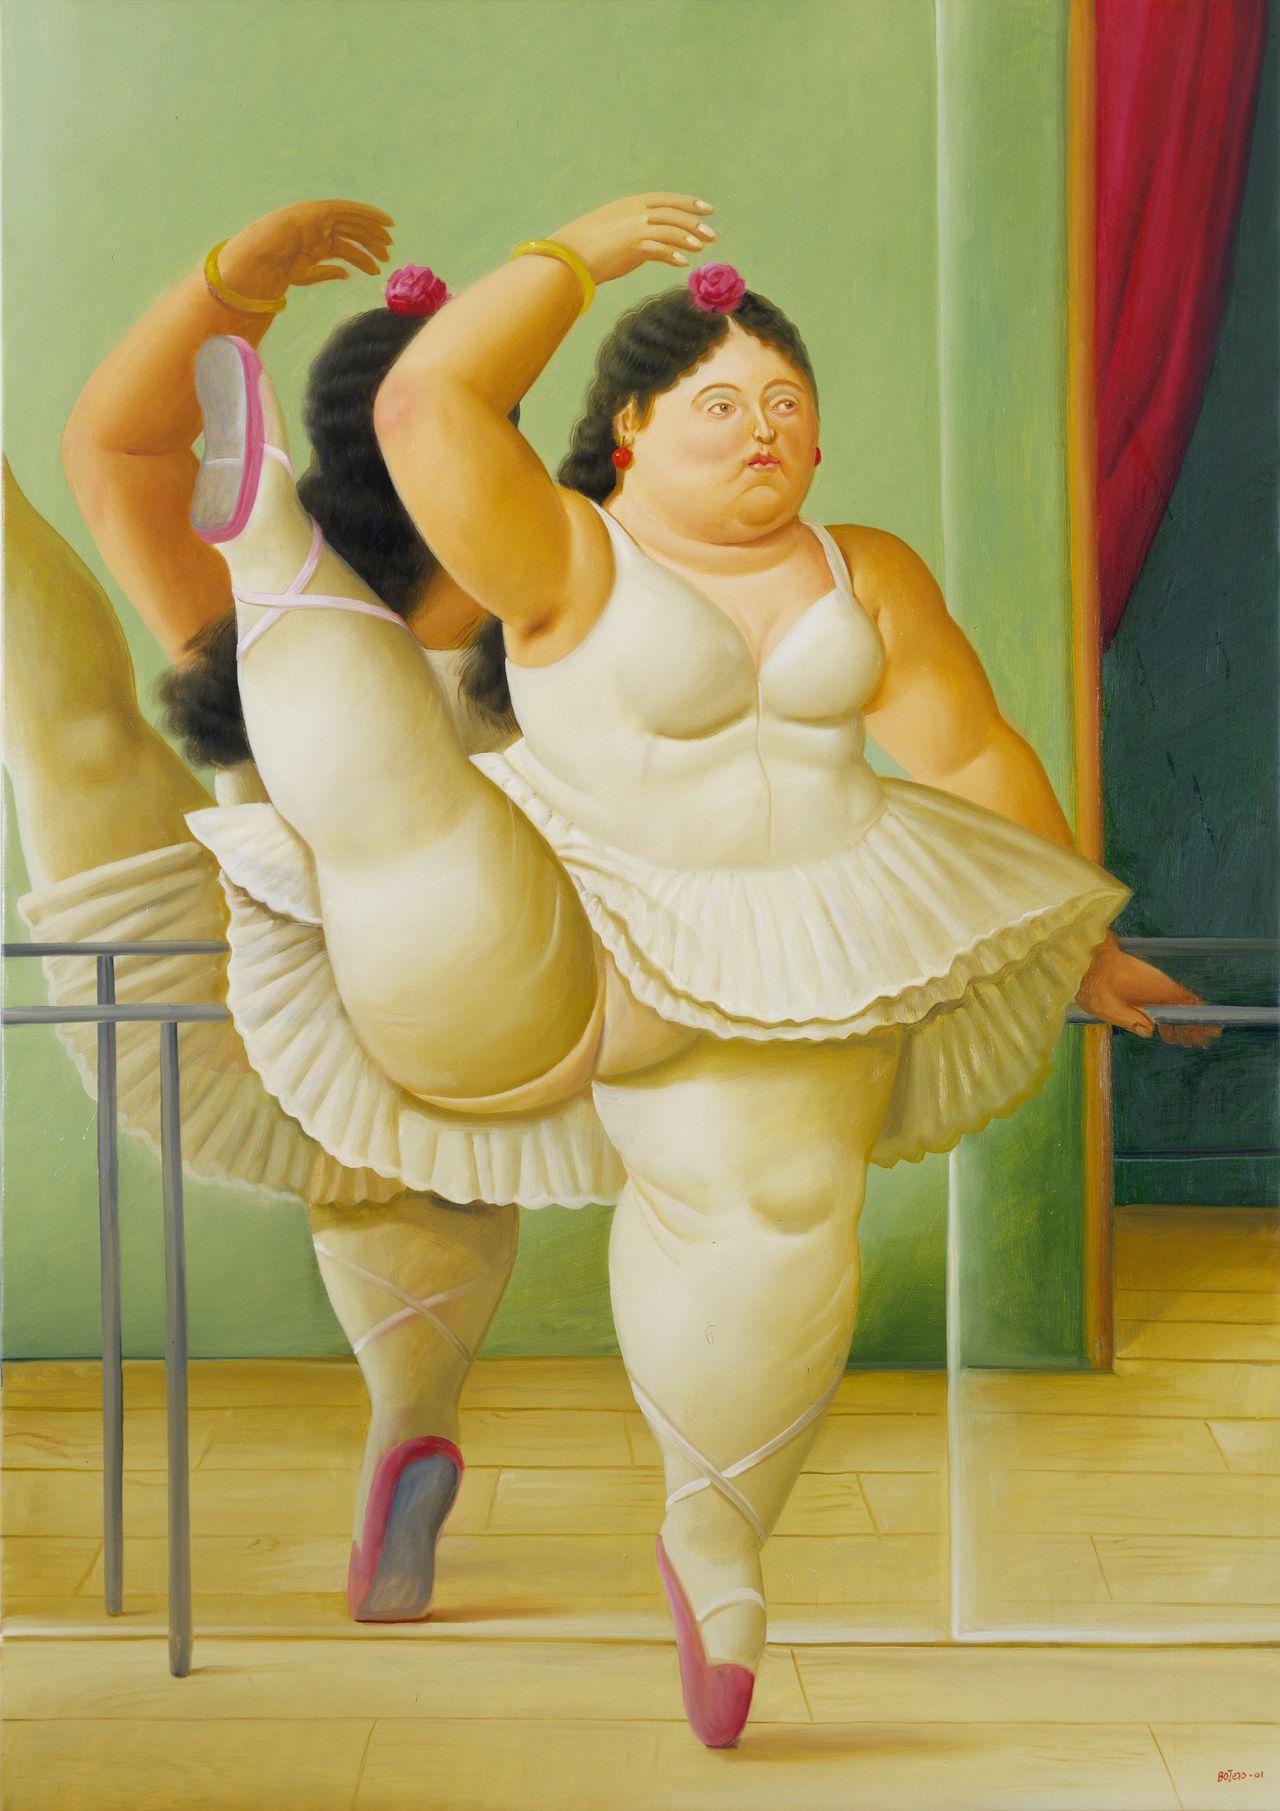 Fernando Botero "Bailarina en la barra" (2001). Cortesía de la exposición.